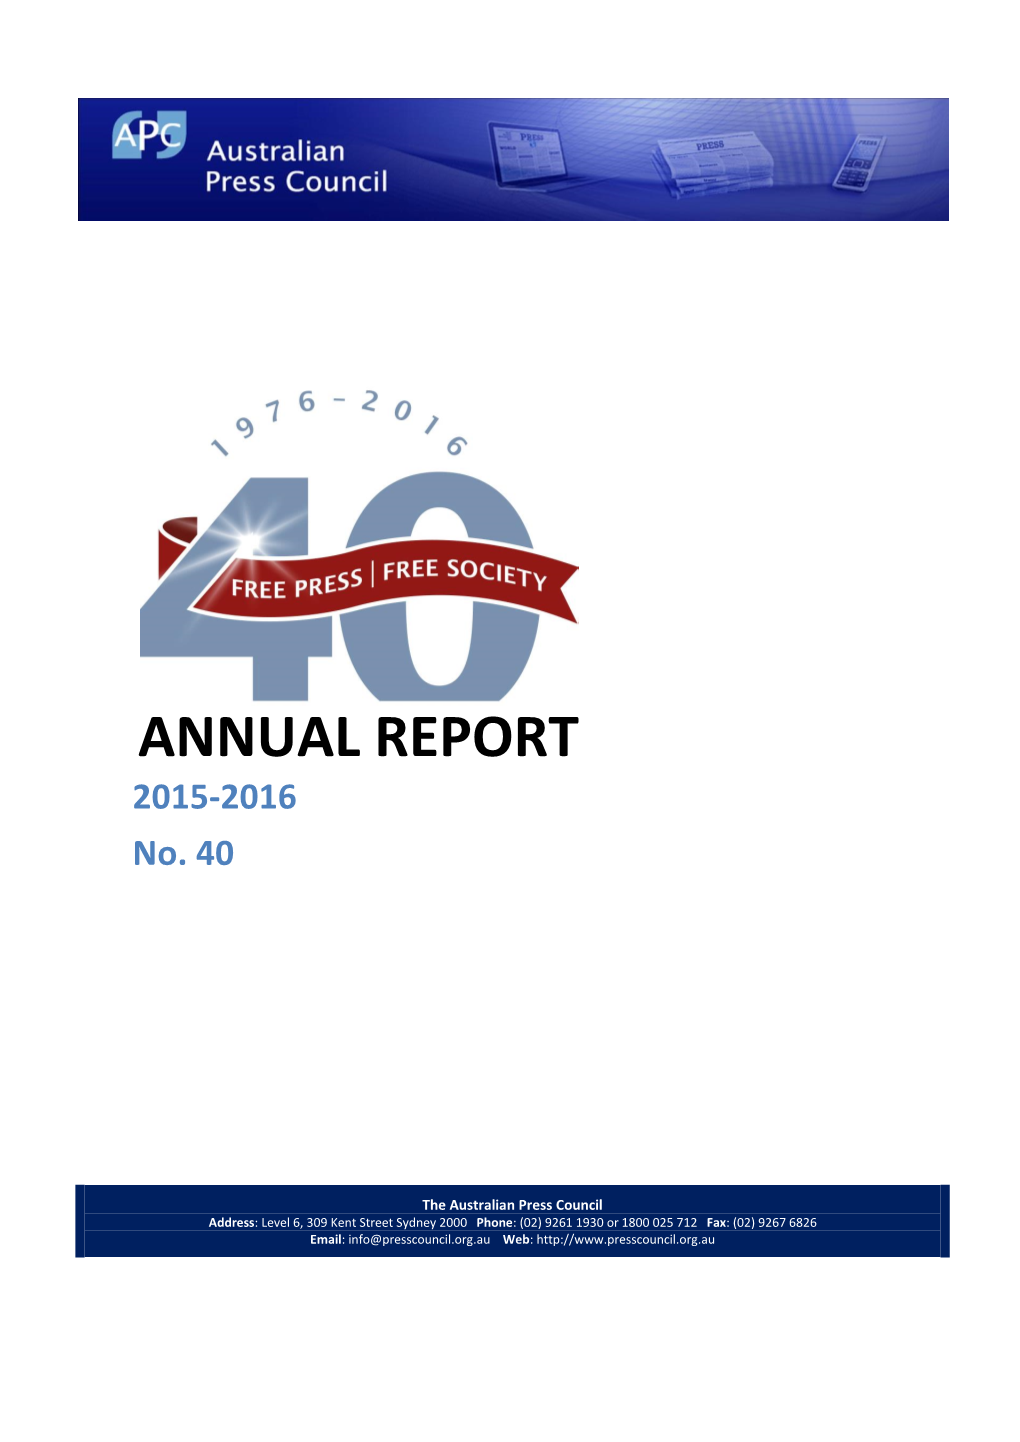 ANNUAL REPORT 2015-2016 No